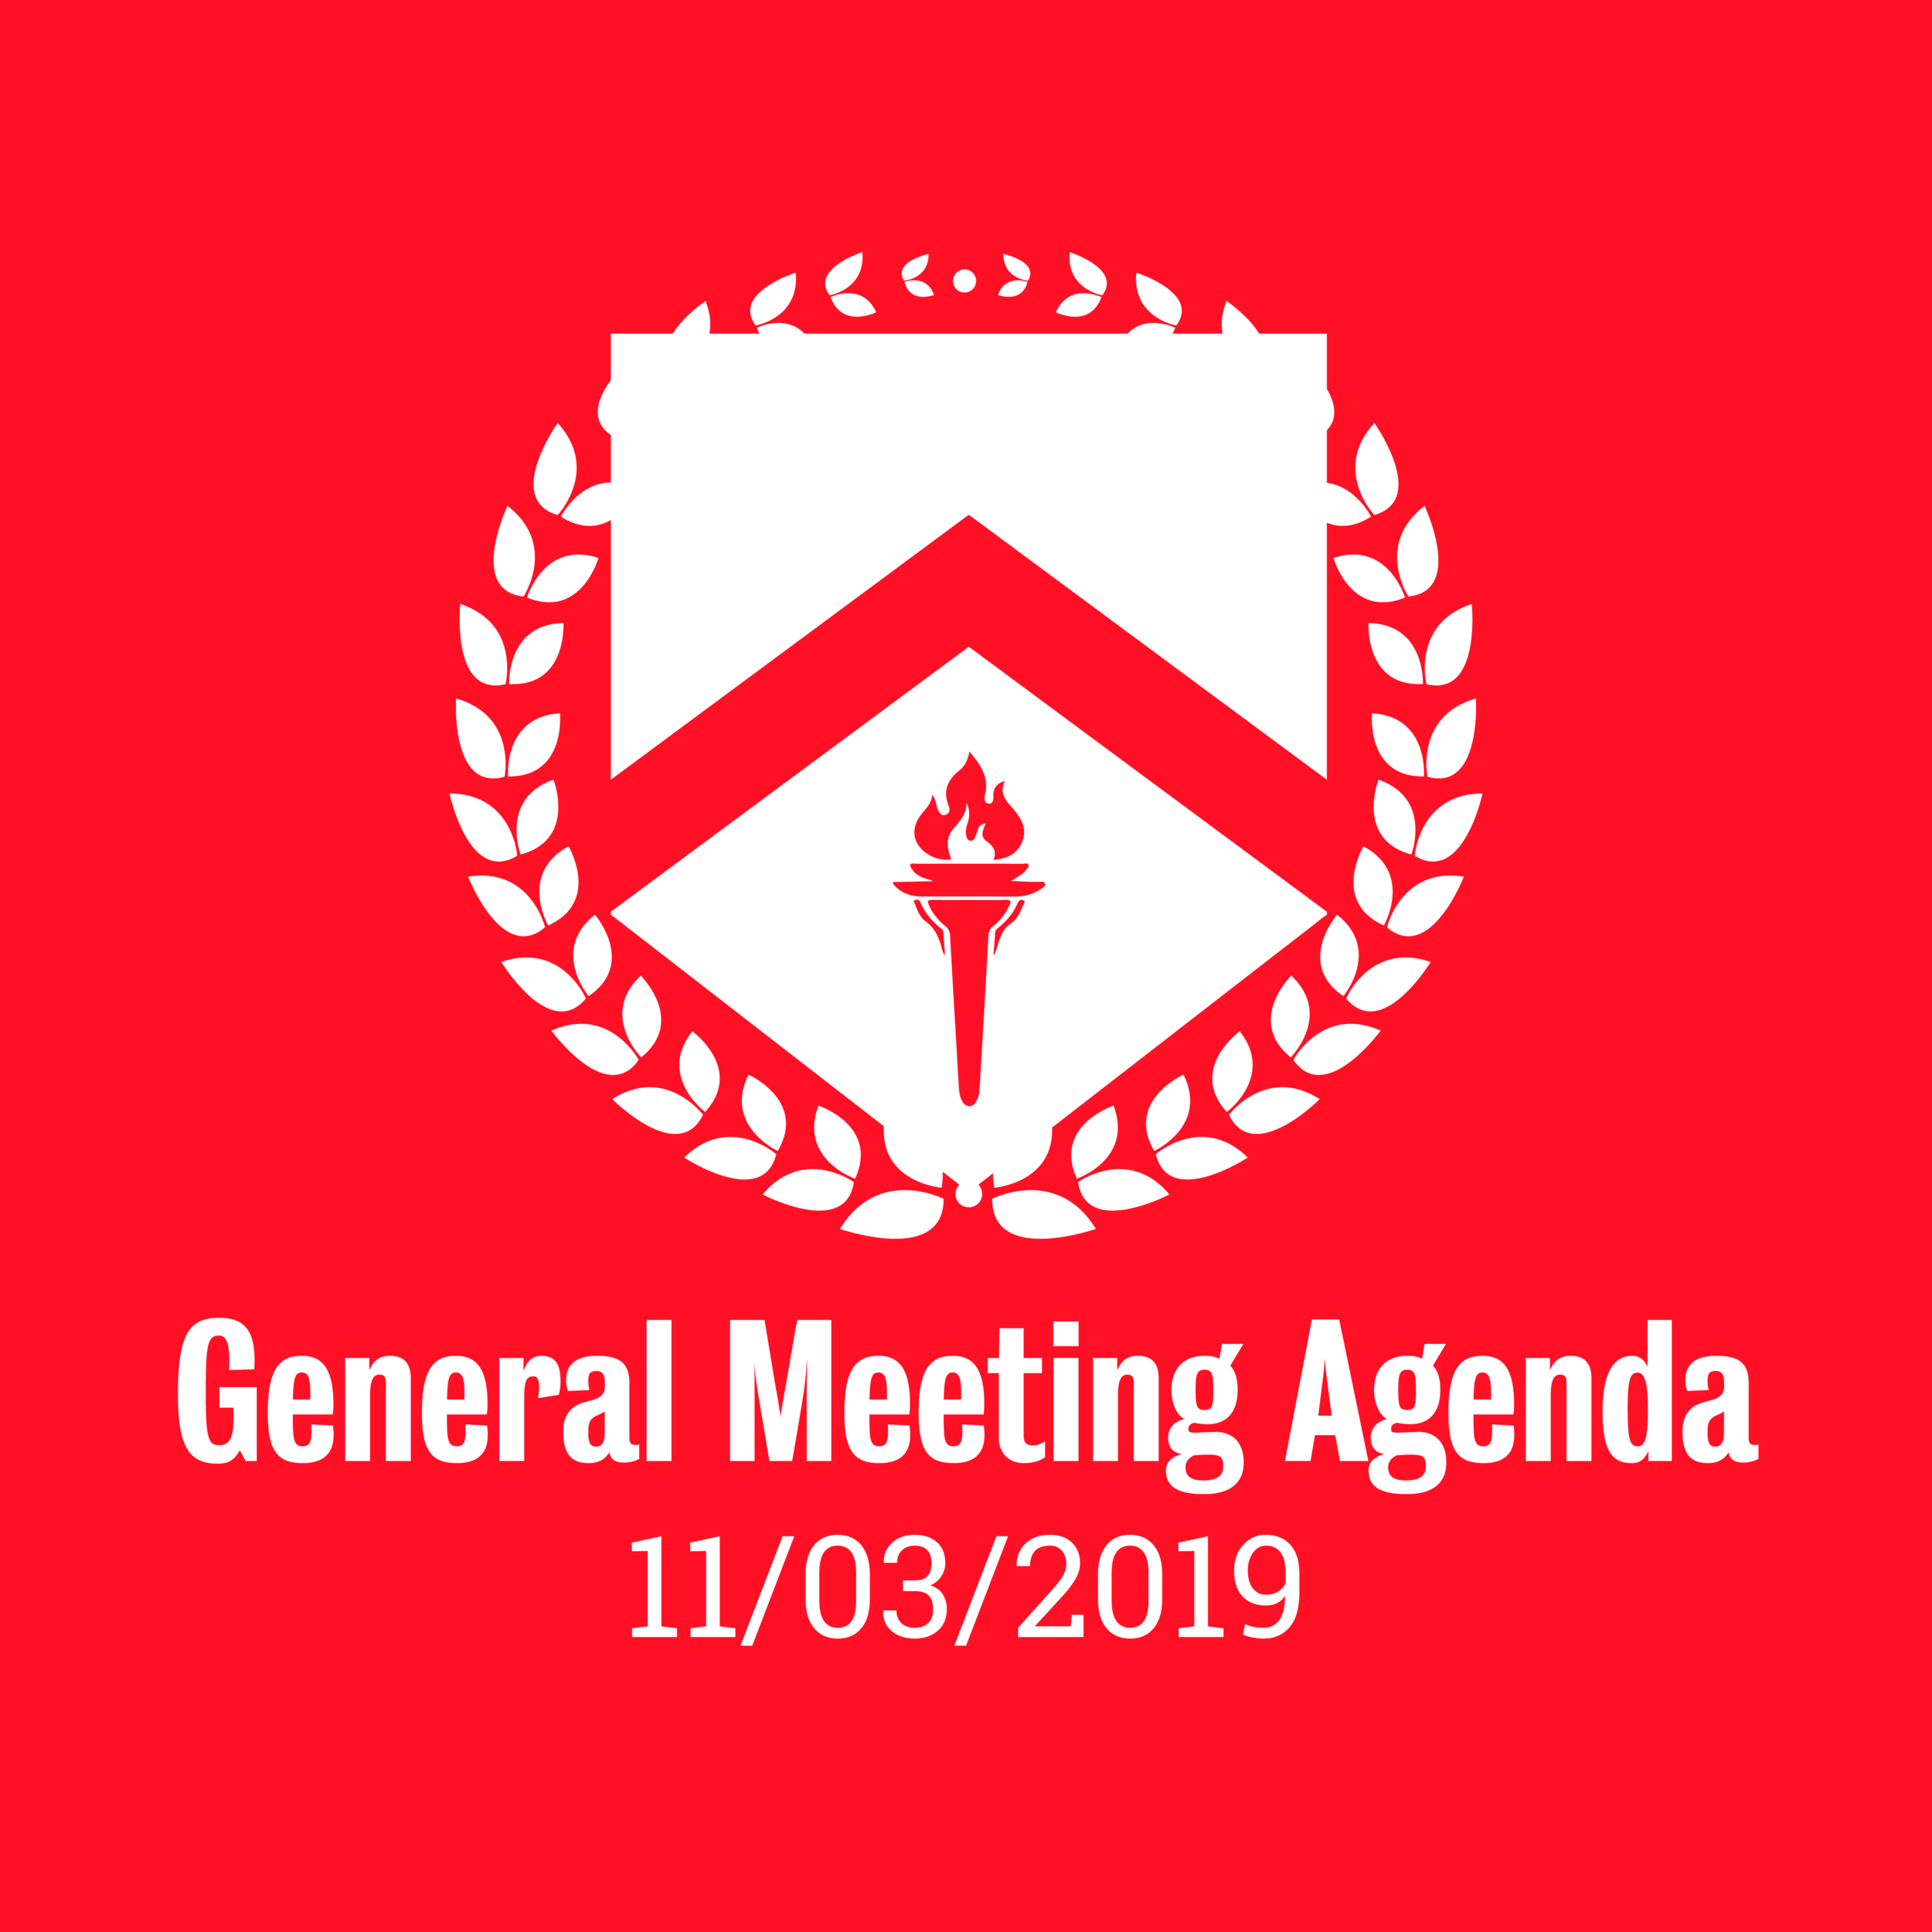 General Meeting Agenda 11/03/2019